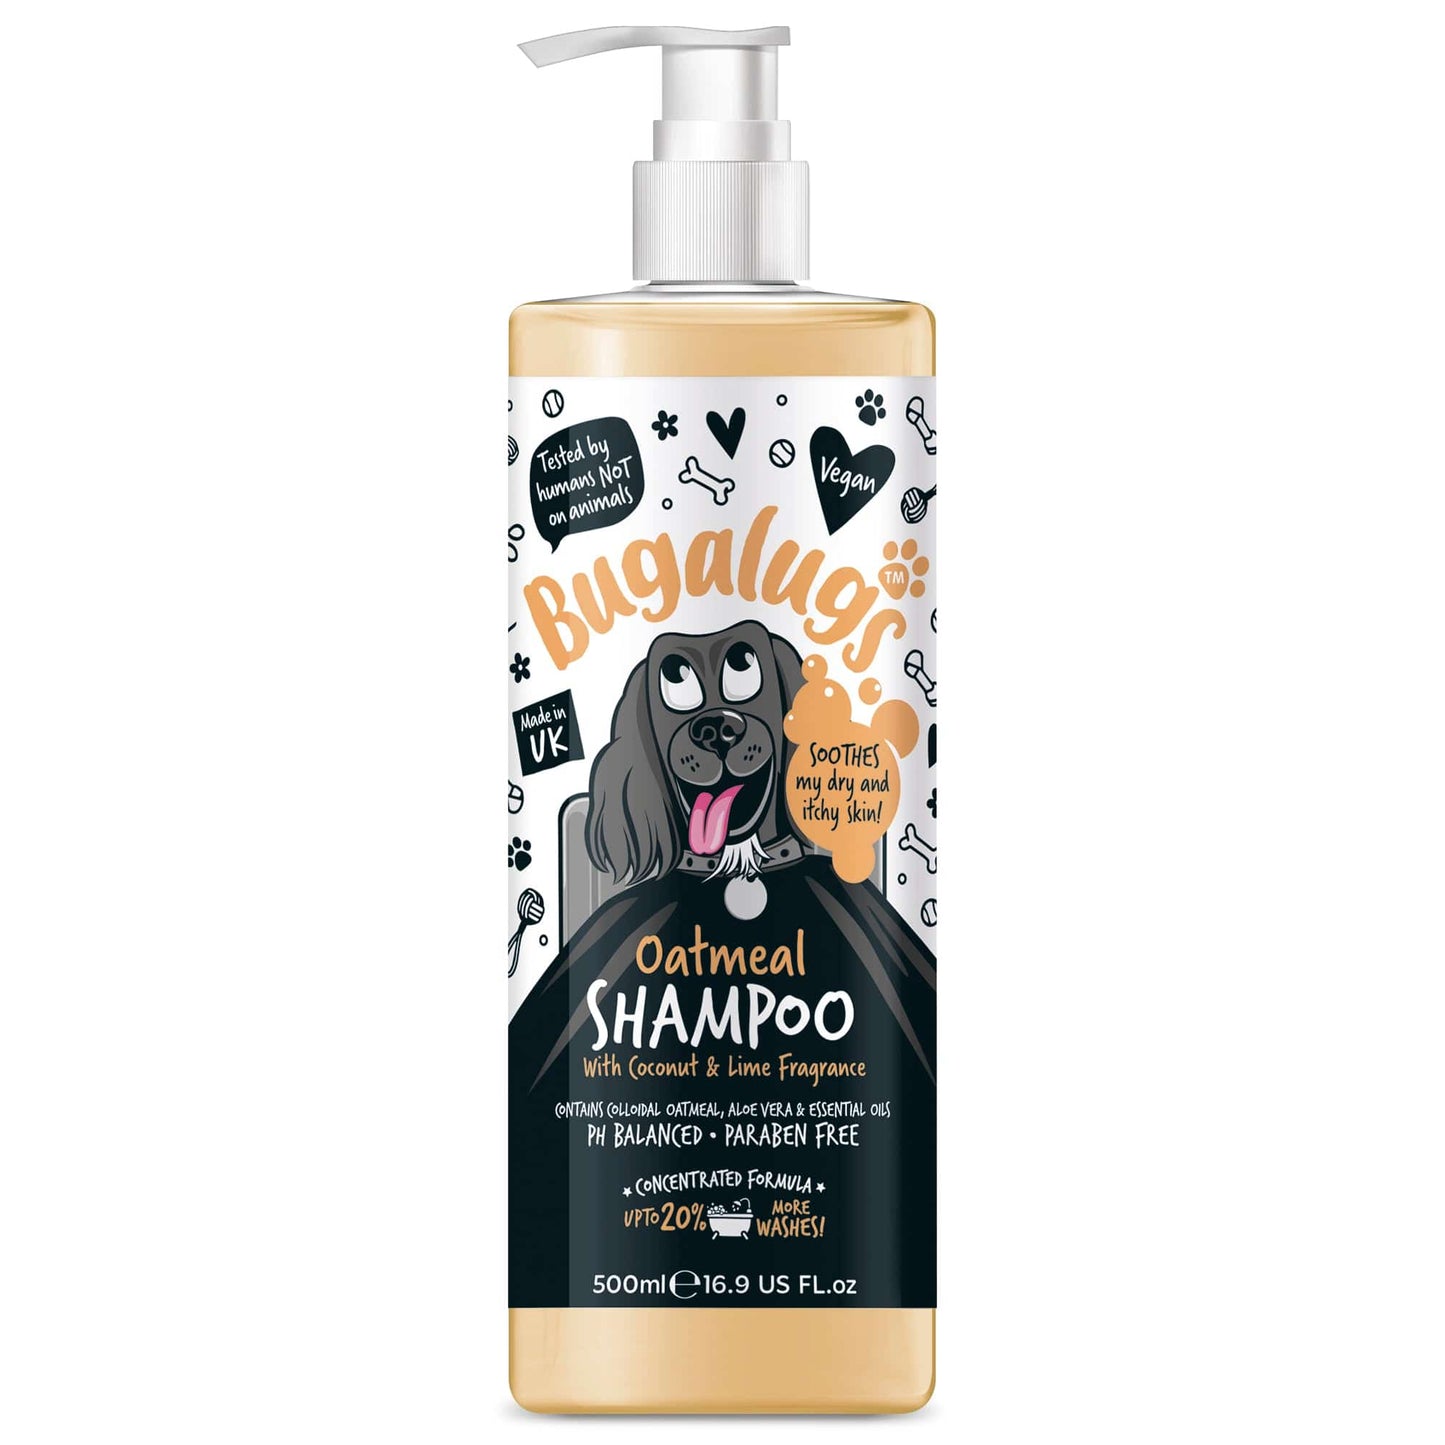 Bugalugs™ Oatmeal Shampoo